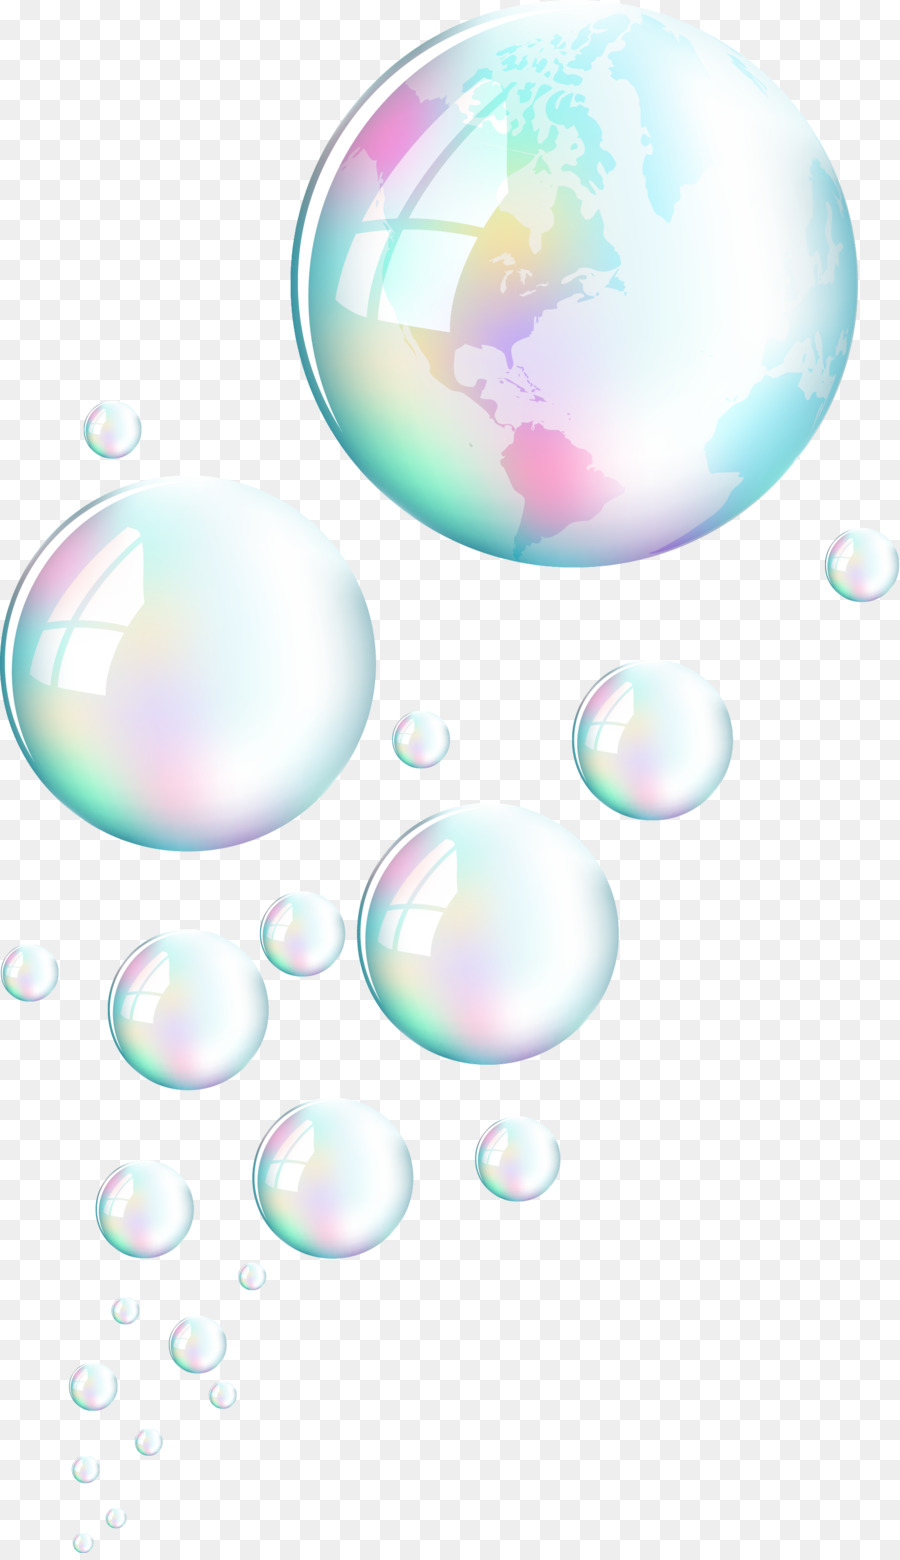 Color Download - SCIENCE fantasy bubble vector png download - 1694*2923 - Free Transparent Color png Download.